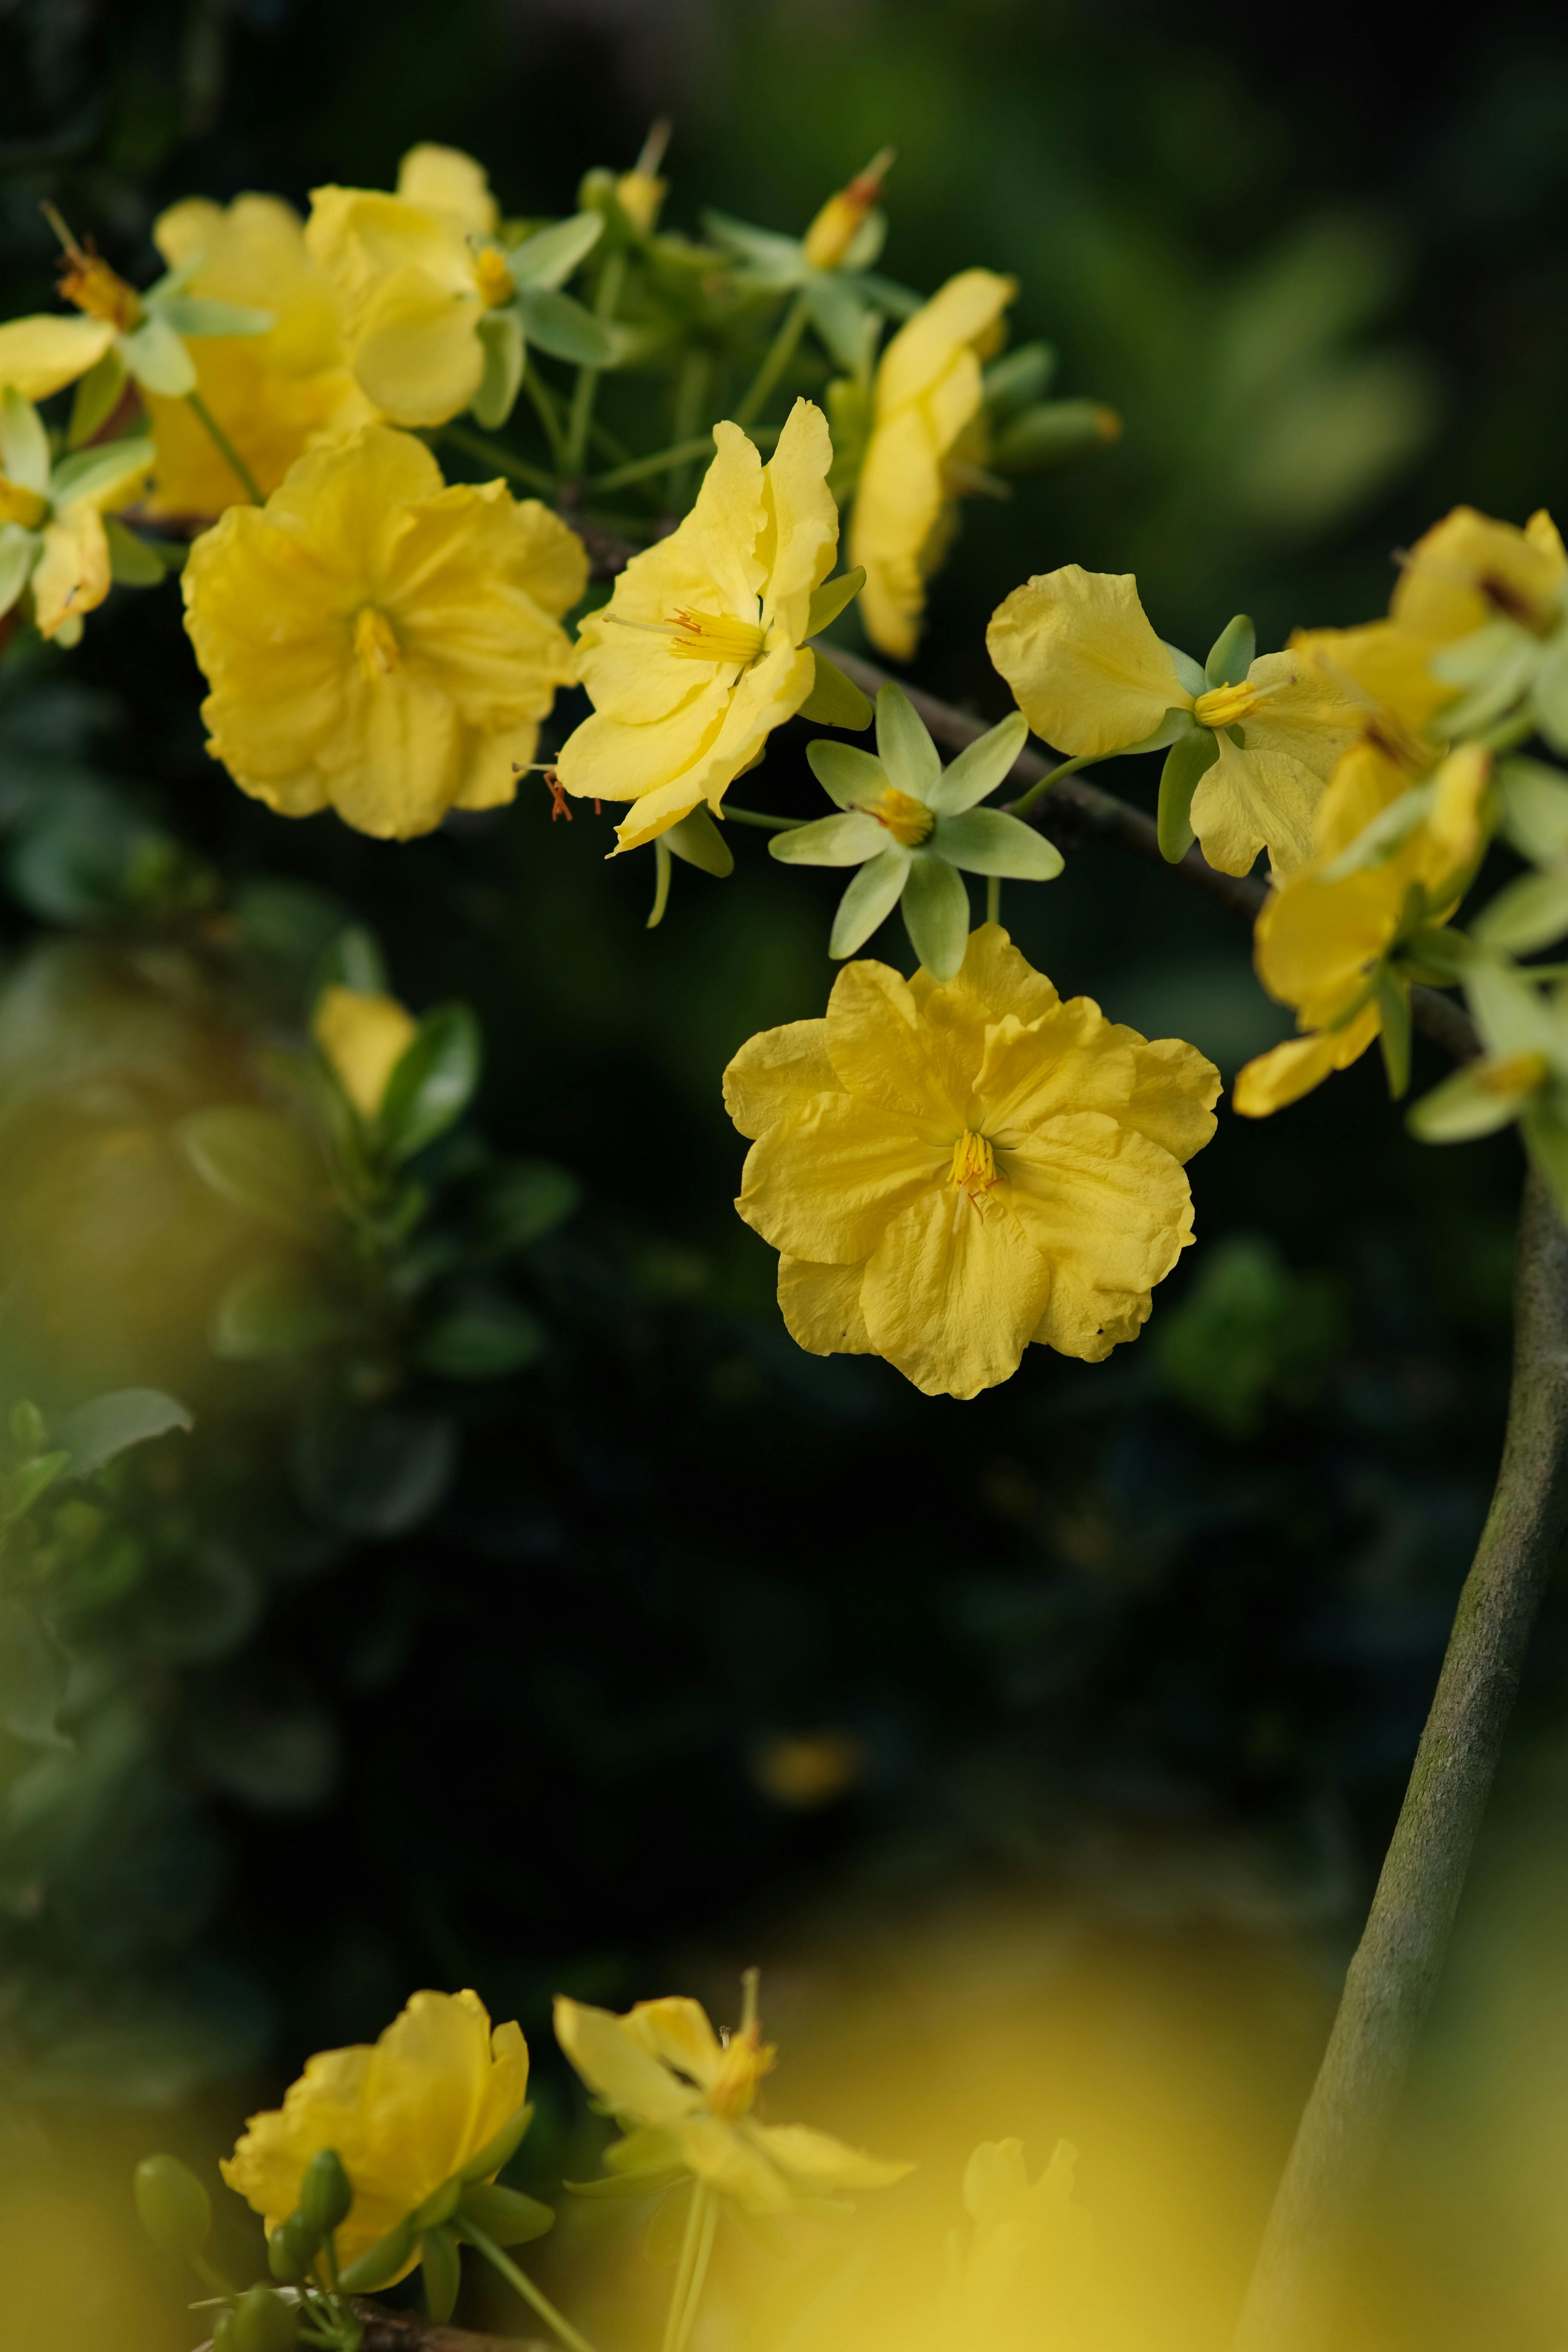 Hoa vàng nhỏ là biểu tượng cho sự tươi mới, sự sáng lạng của mùa xuân. Những bông hoa vàng nhỏ trên hình nền sẽ tạo nên một giai điệu sống động, cũng giống như những điều tốt đẹp sẽ đến với cuộc sống của bạn.